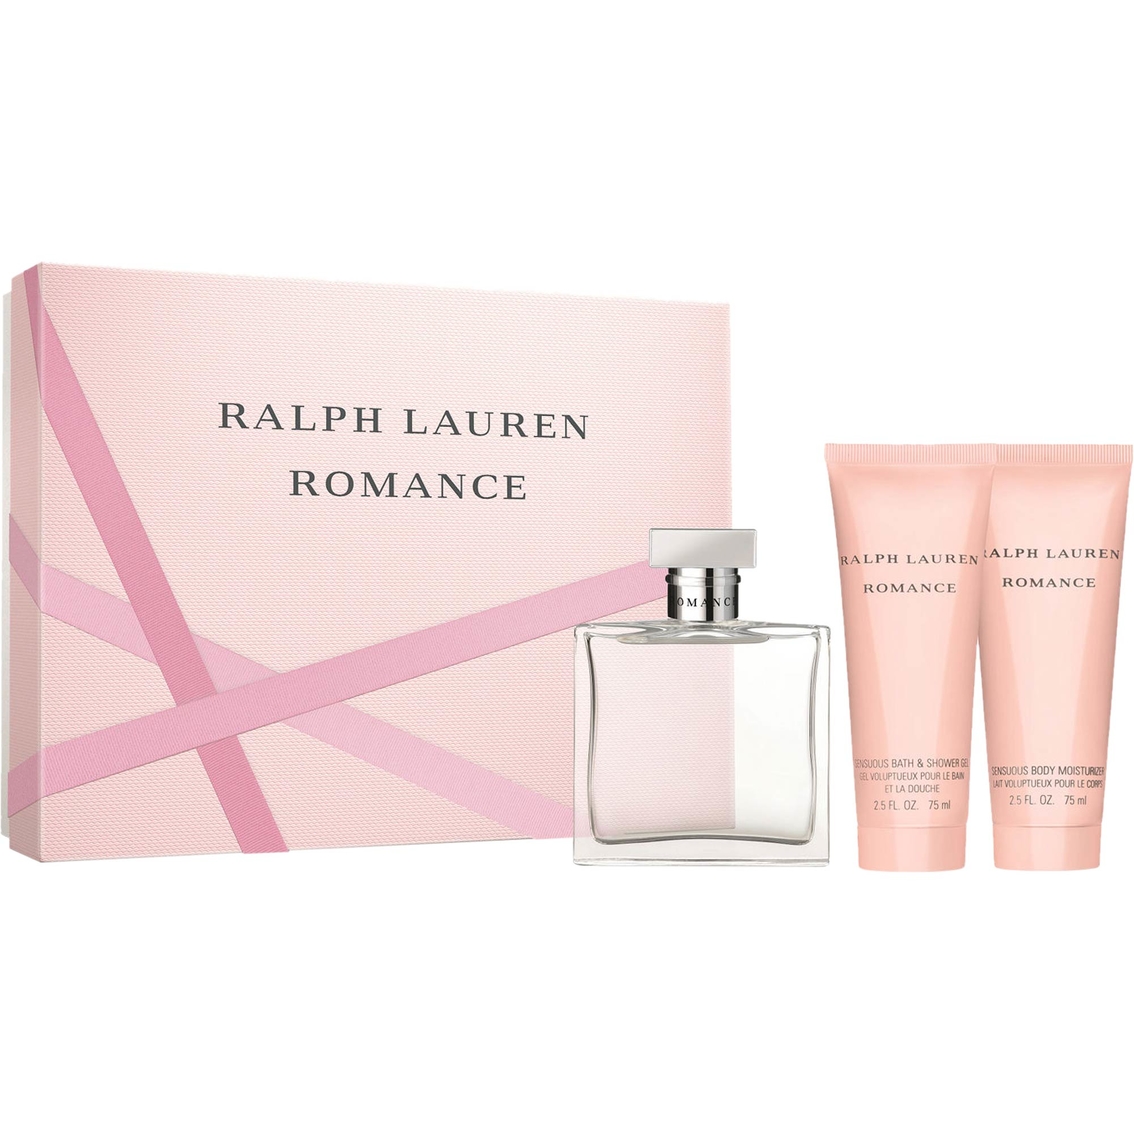 romance by ralph lauren gift set